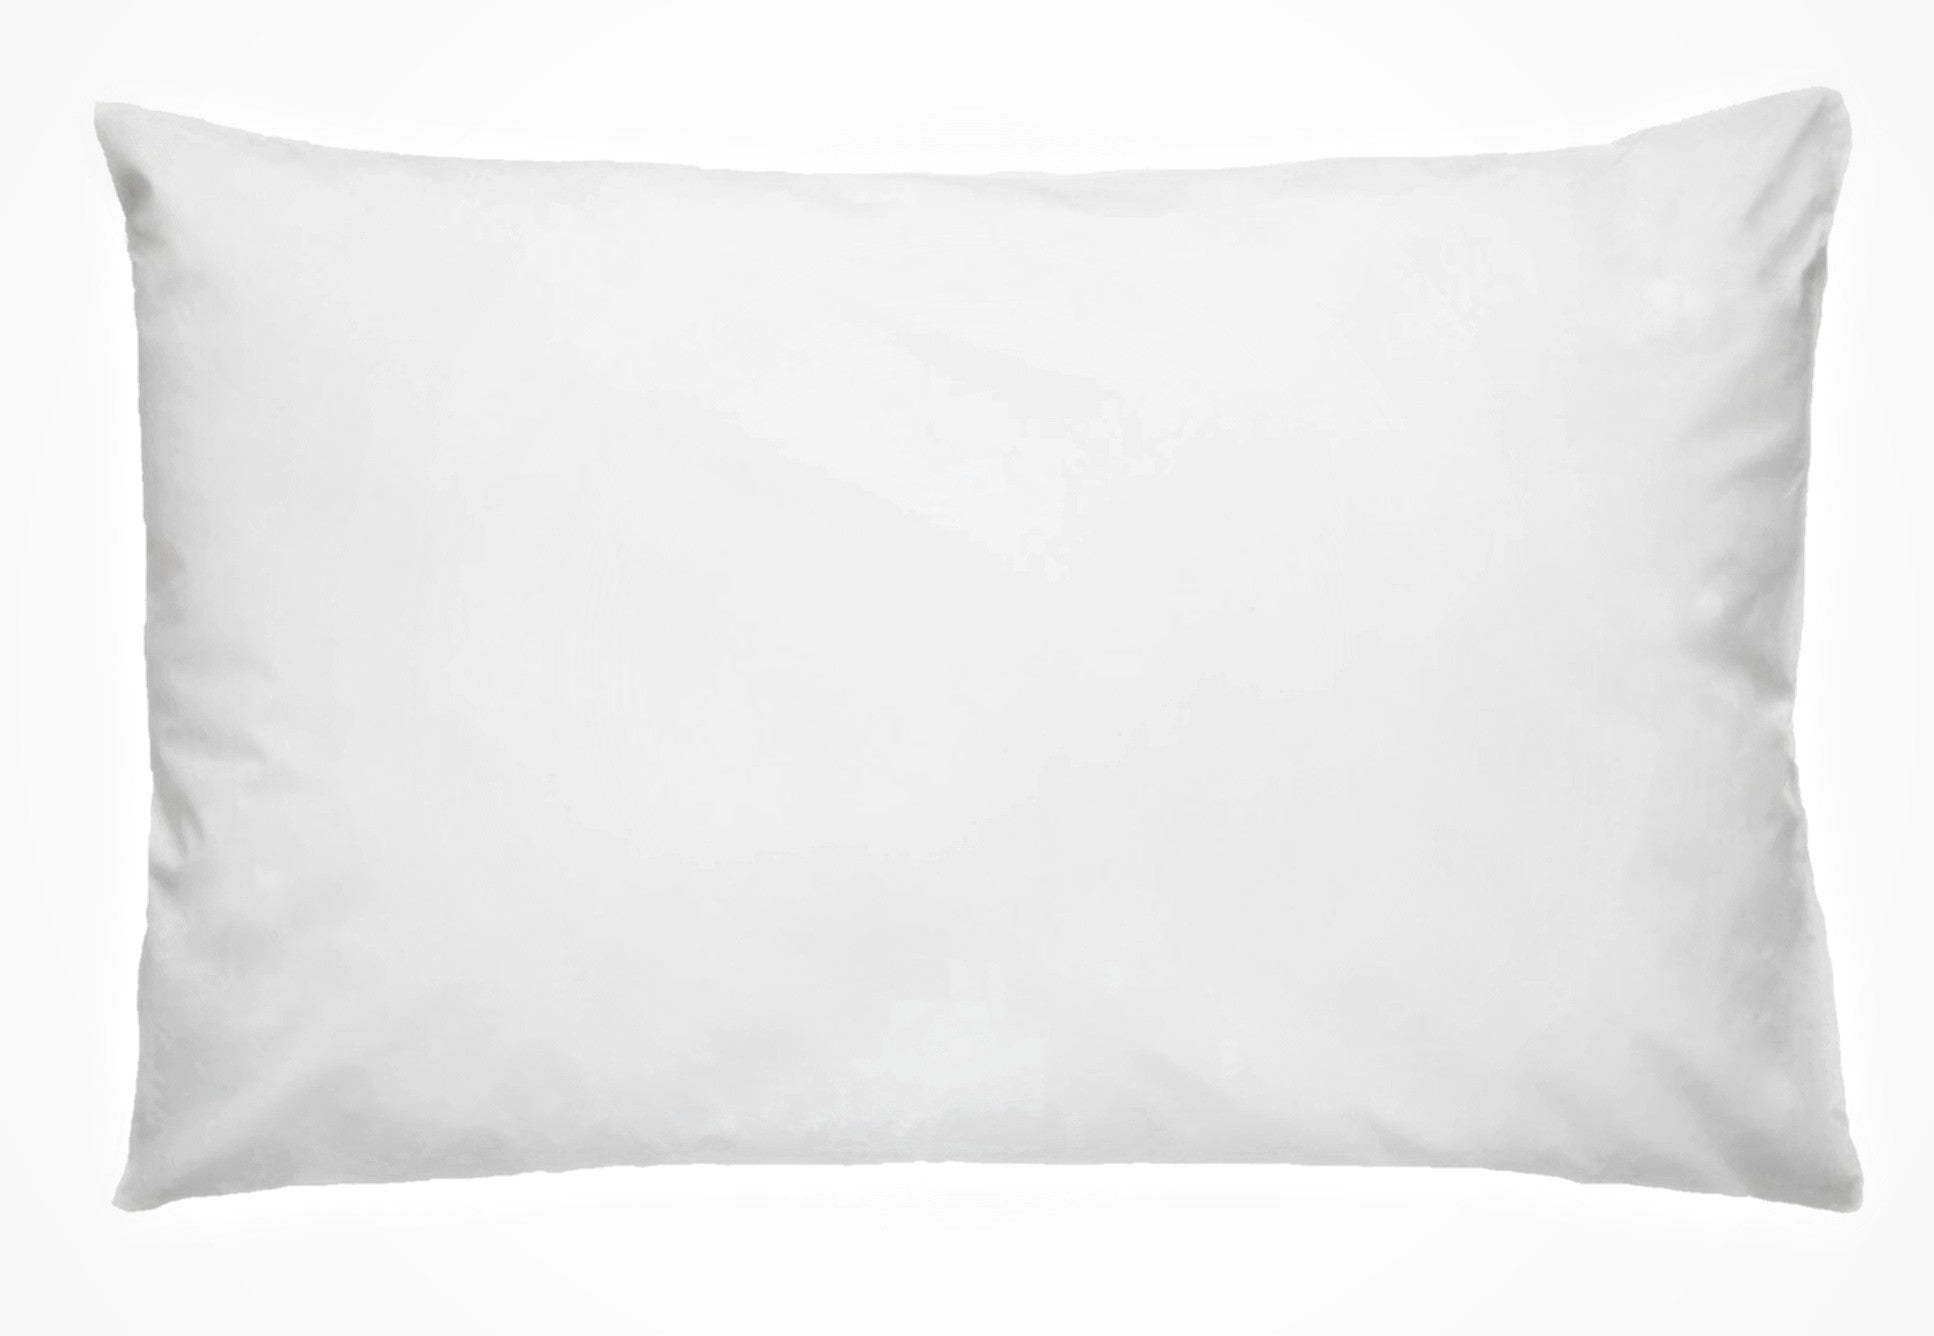 Baavet pure wool 900g (s) firm  pillow